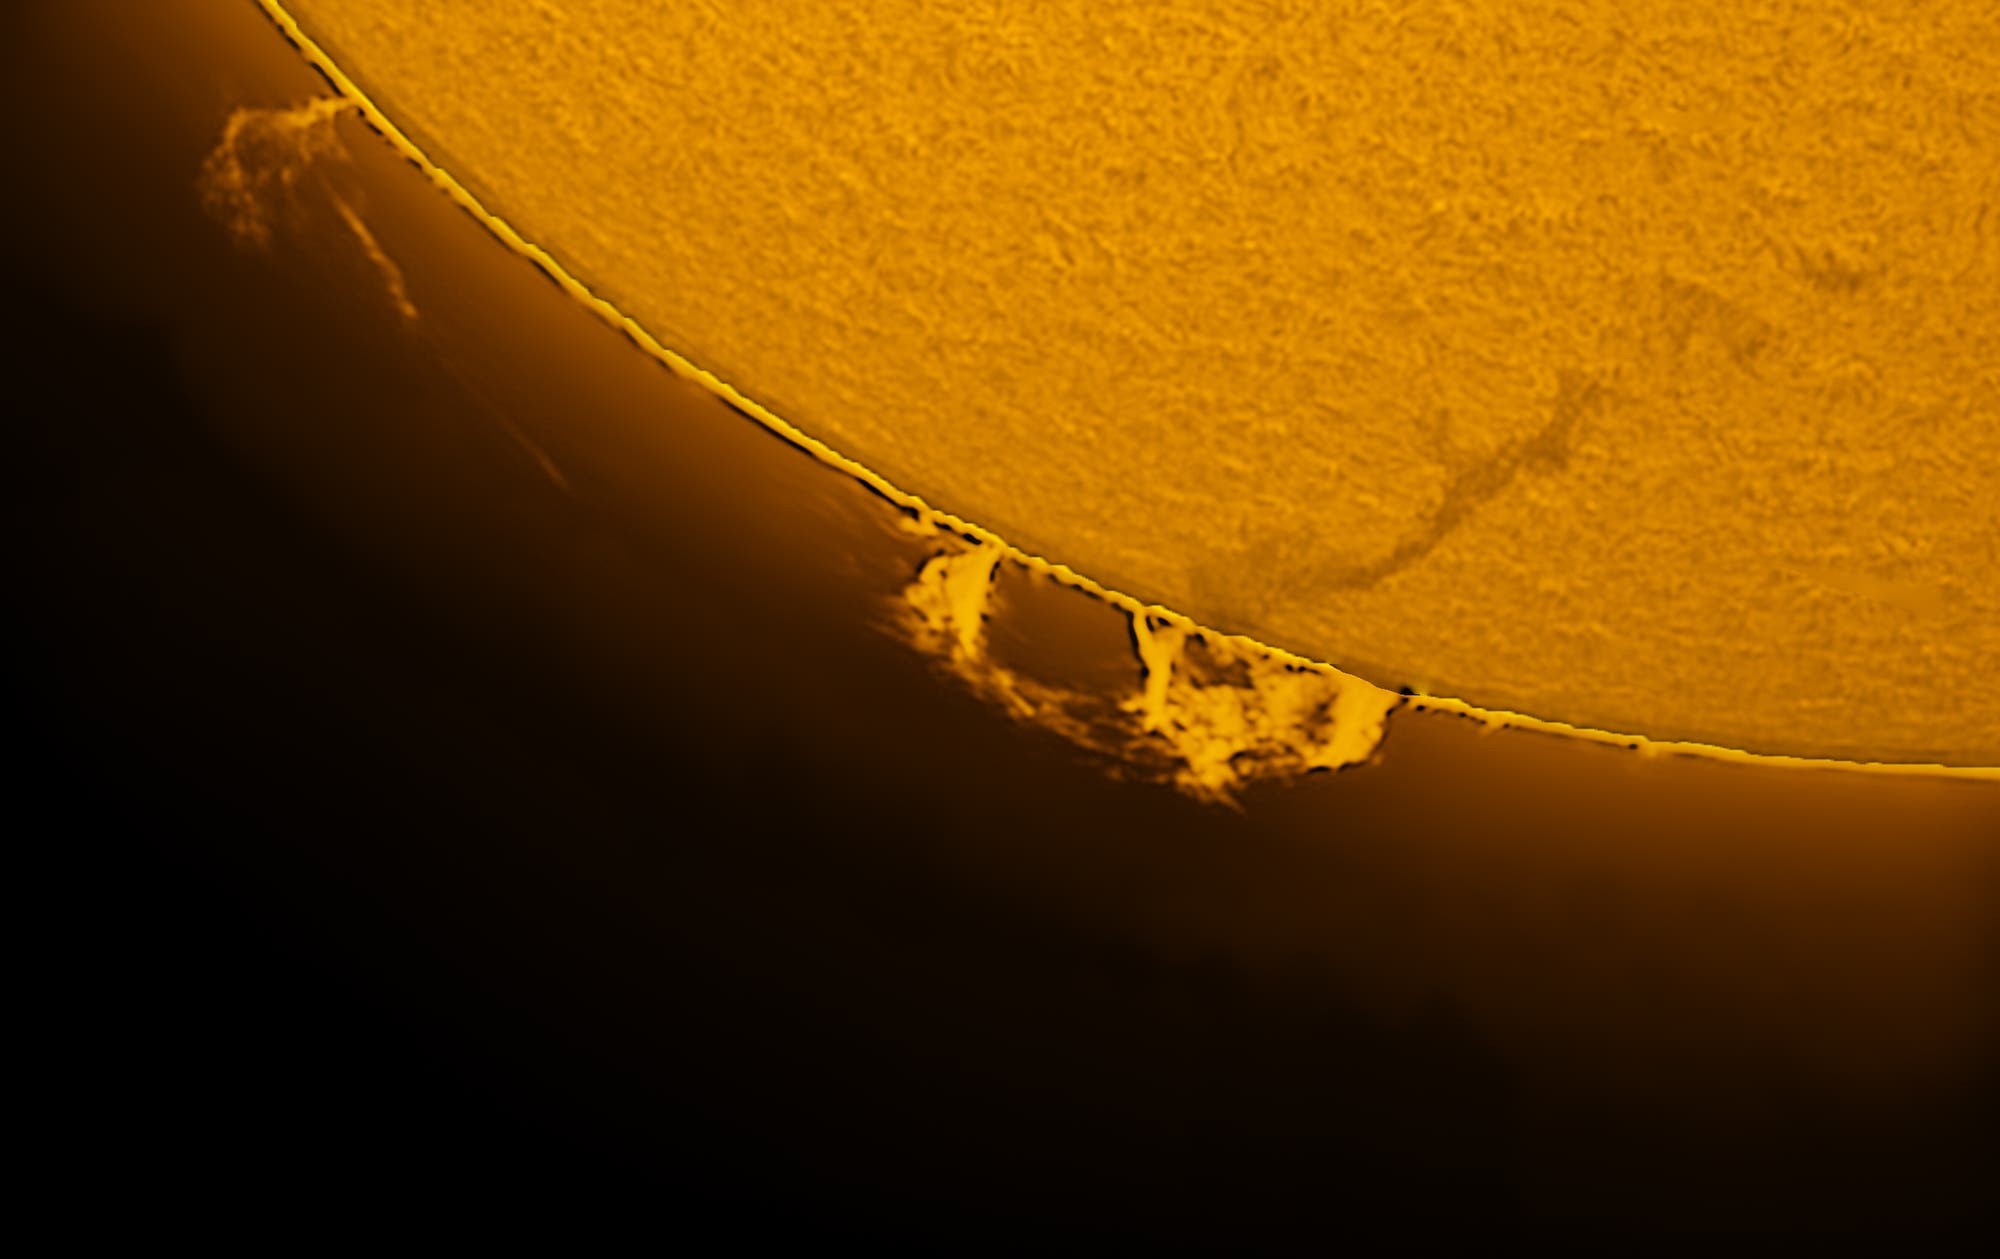 Sonnenprotuberanz am 21. April 2021